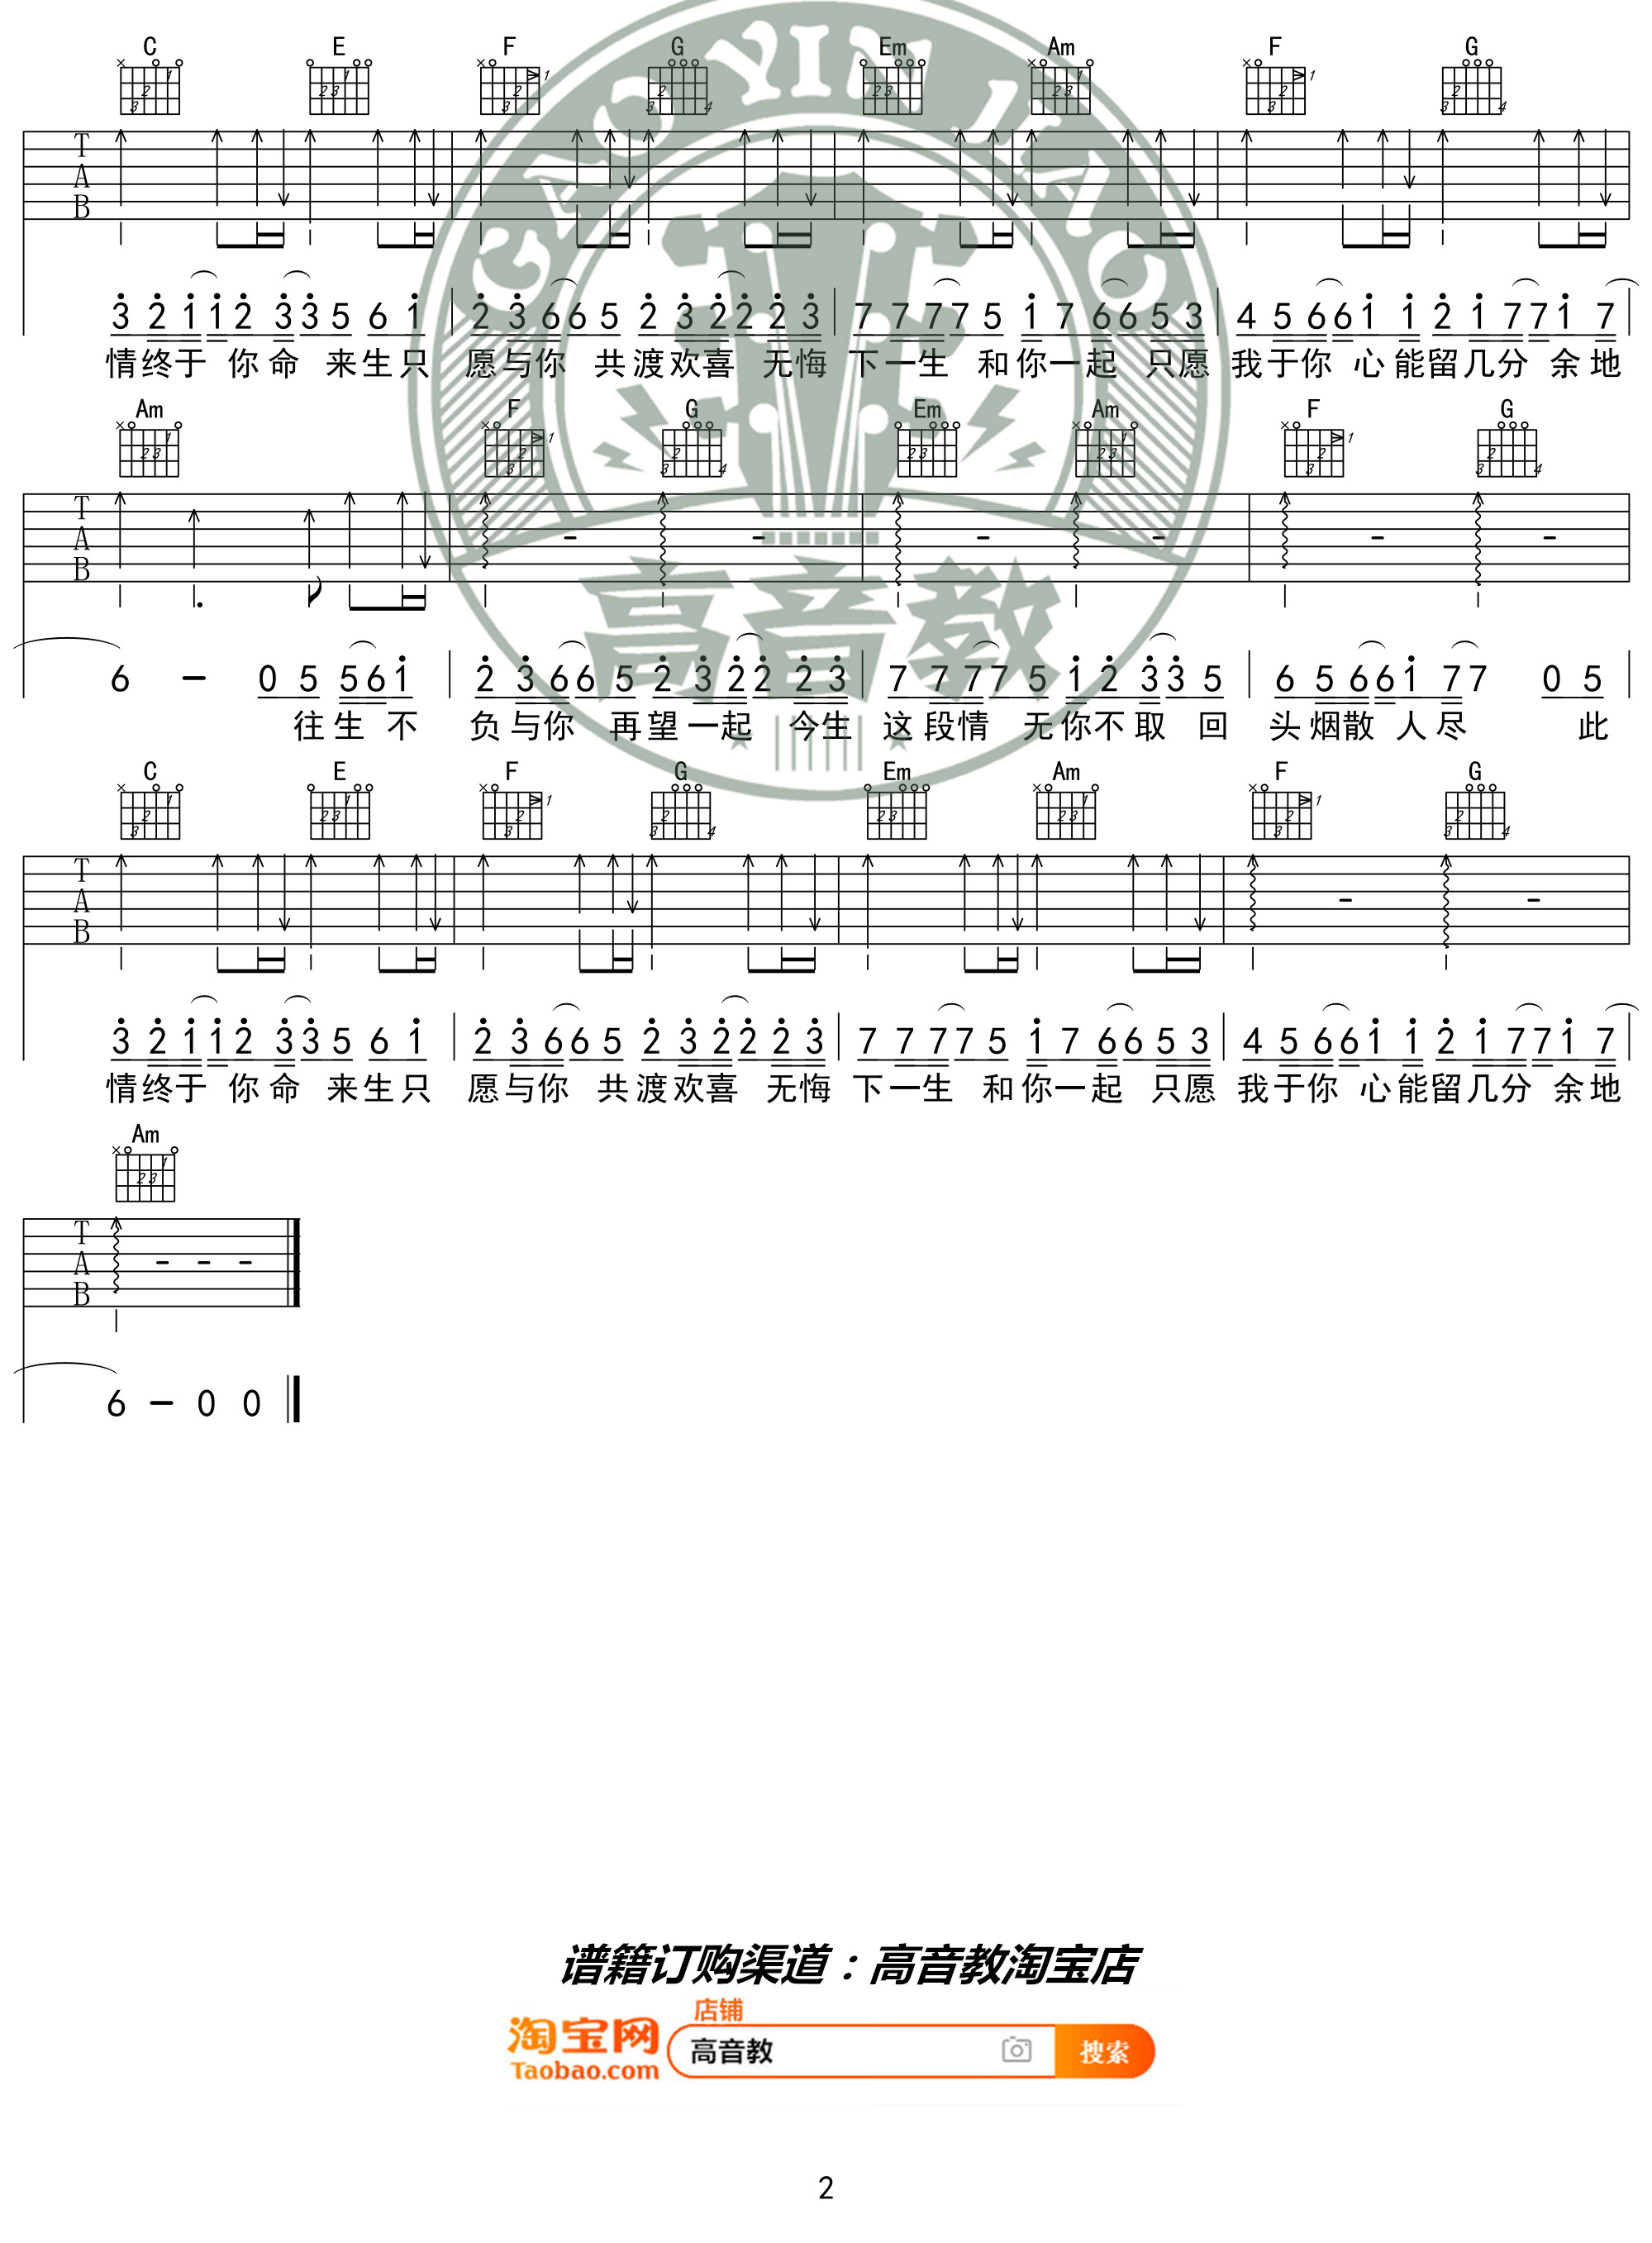 网络歌曲《不负于你》吉他谱(C调)-Guitar Music Score